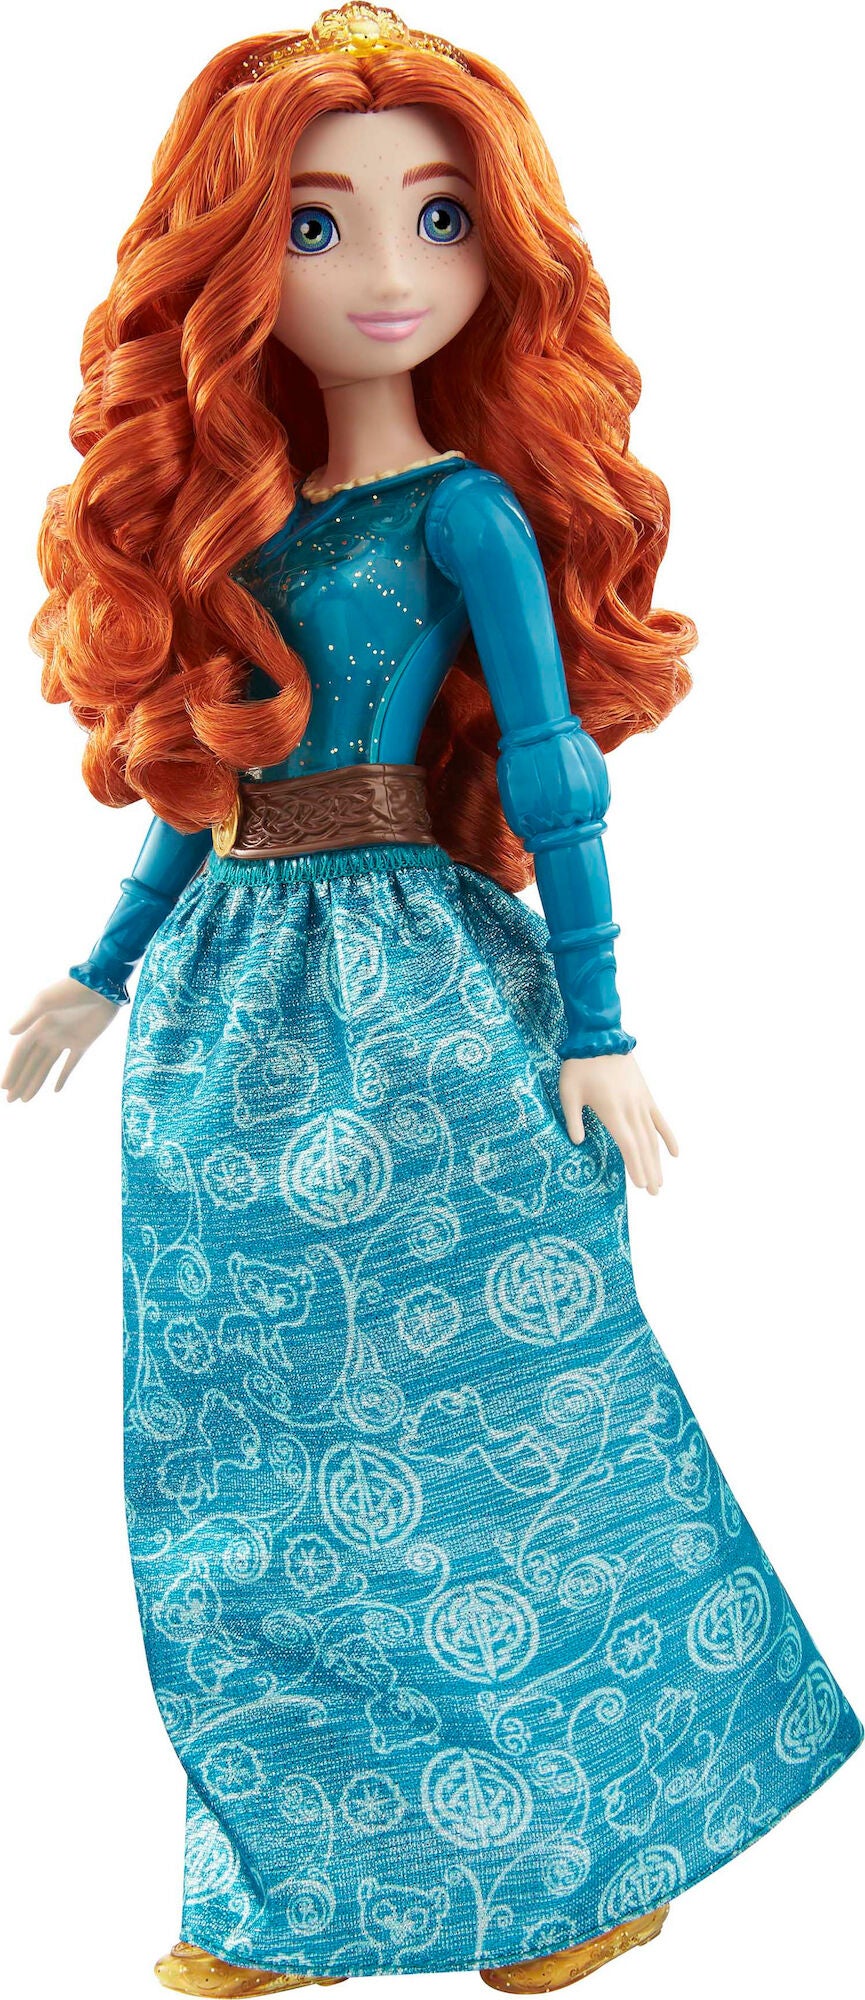 Disney Prinzessinnen Merida Puppe 28cm von Disney Prinzessin